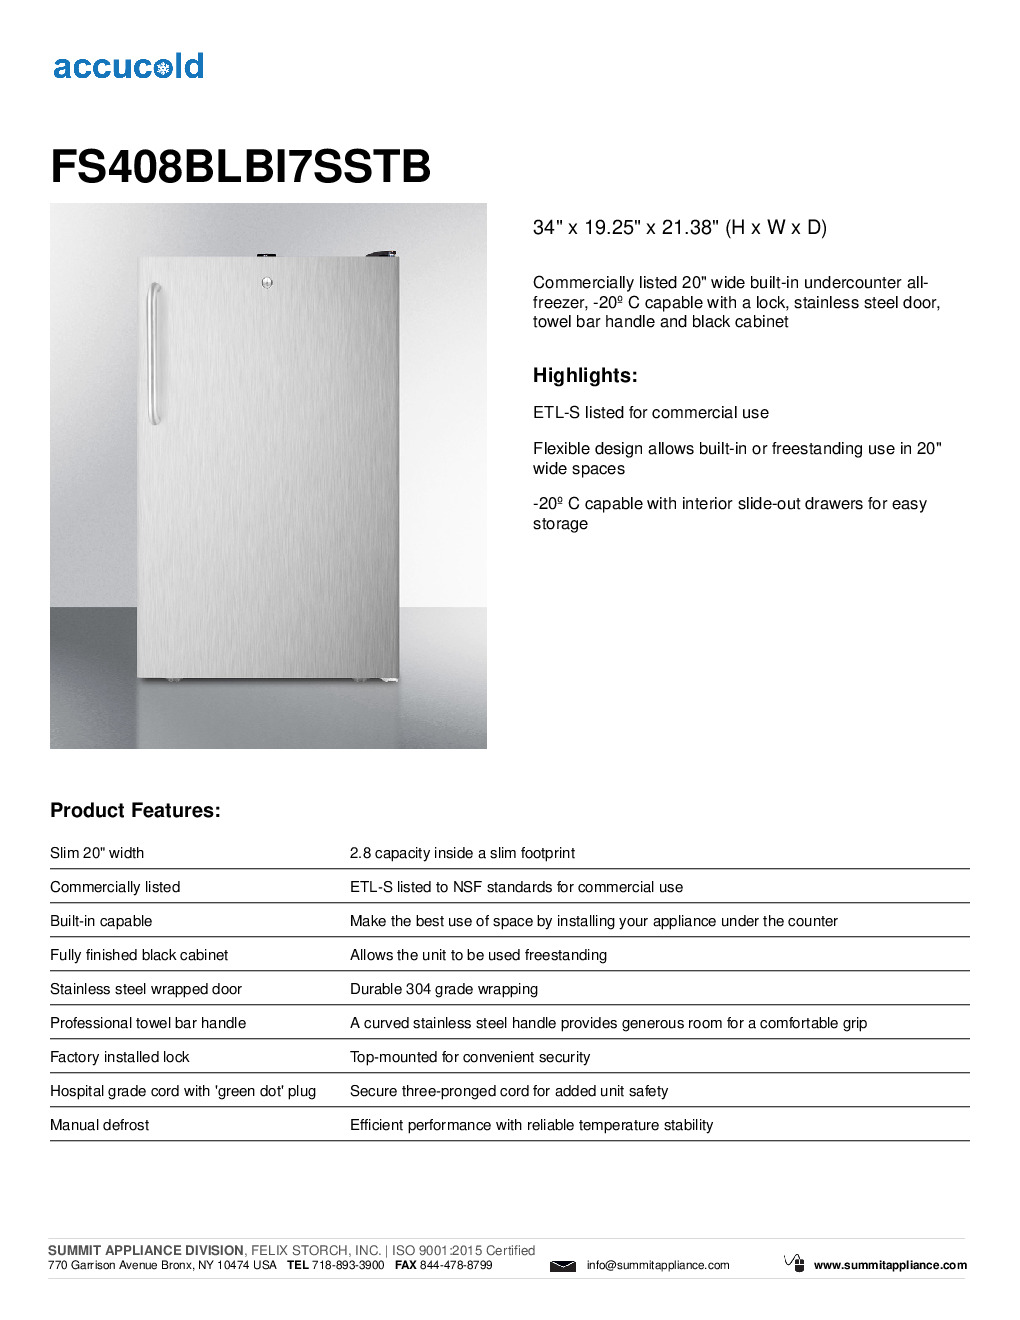 Summit FS408BLBI7SSTB Reach-In Undercounter Freezer Discontinued